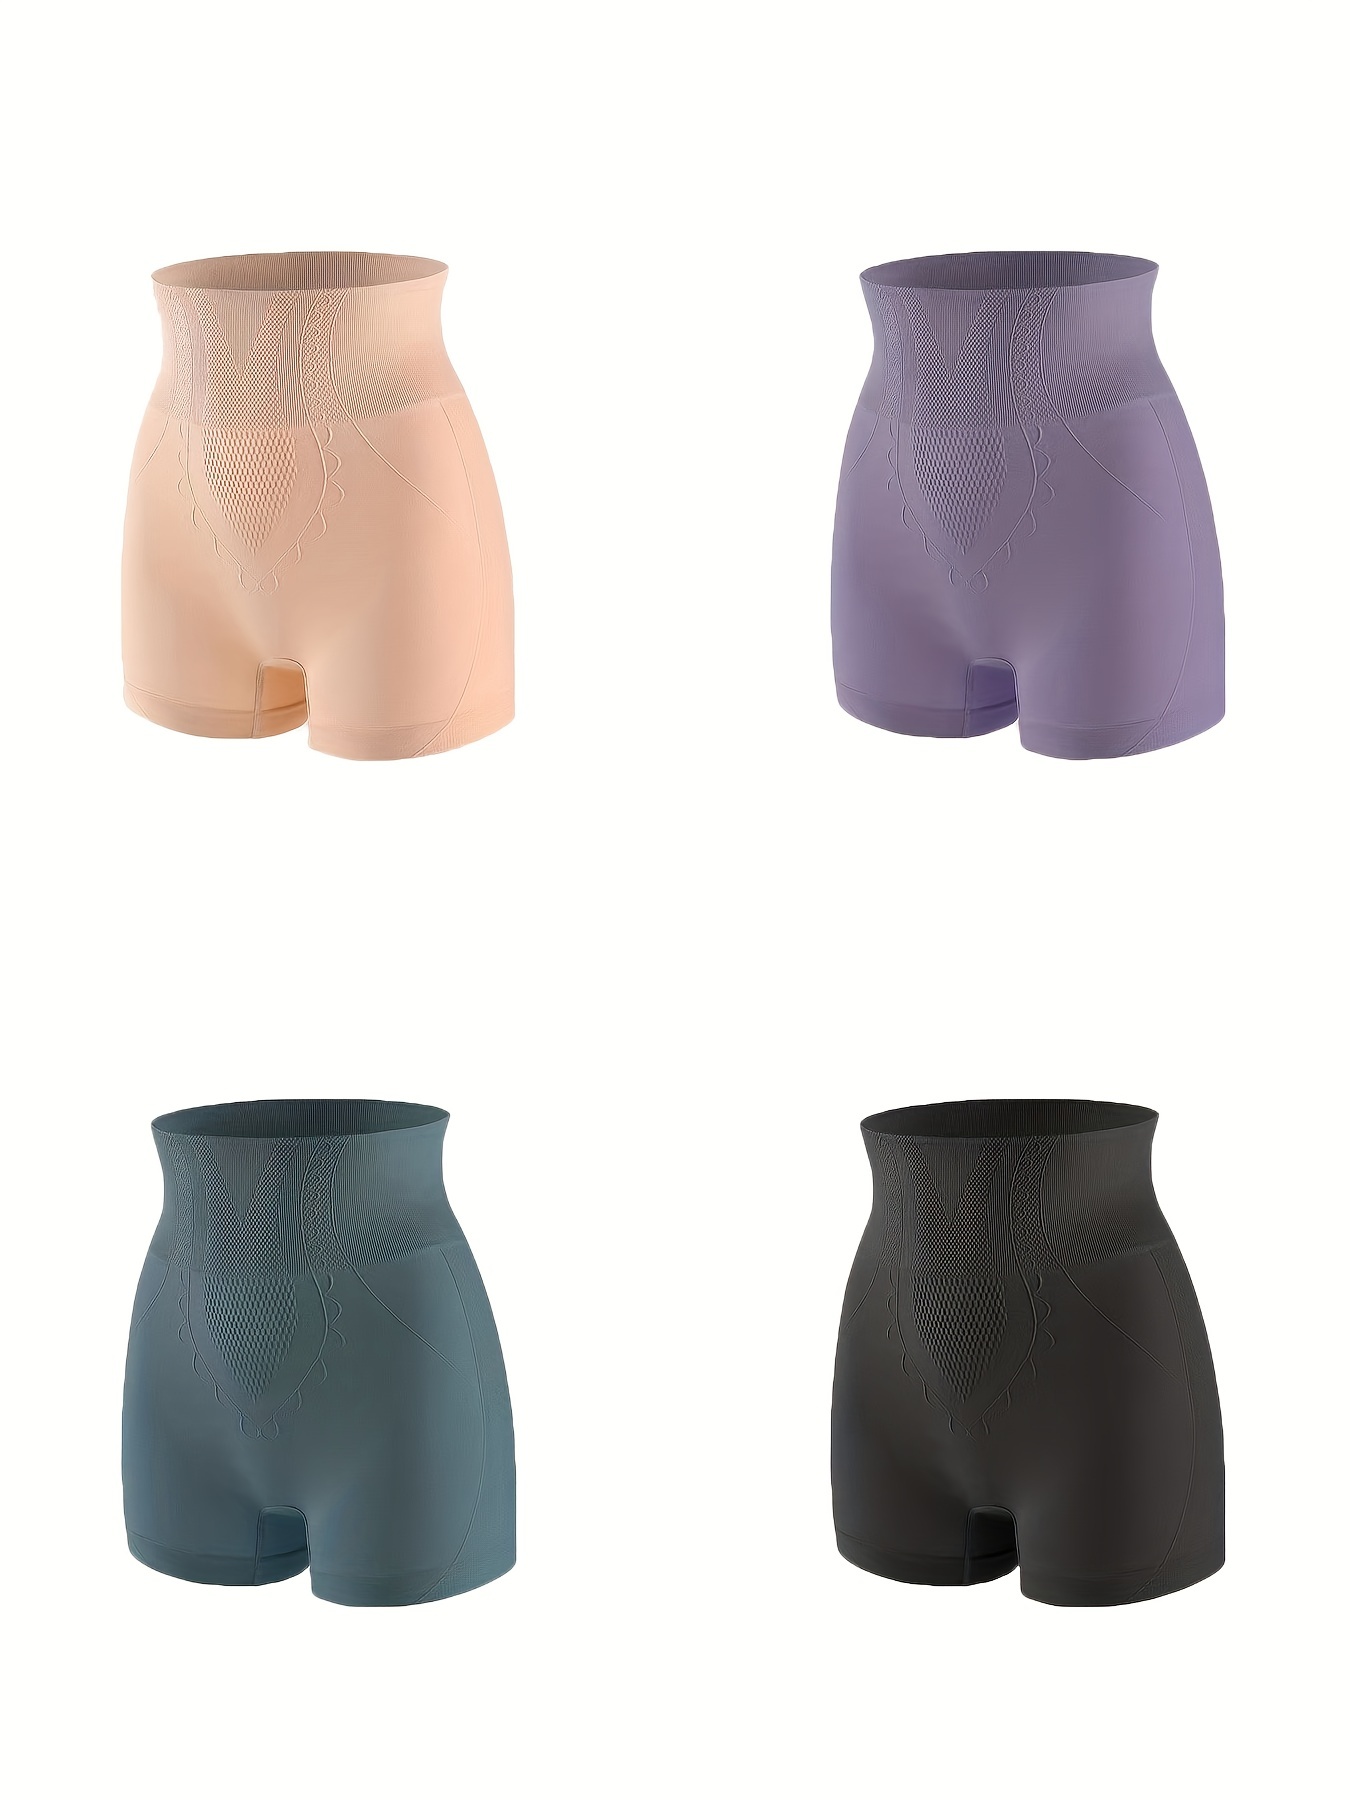 Uniqlo - Body Silhouette Shaper Half Shorts - Black - M